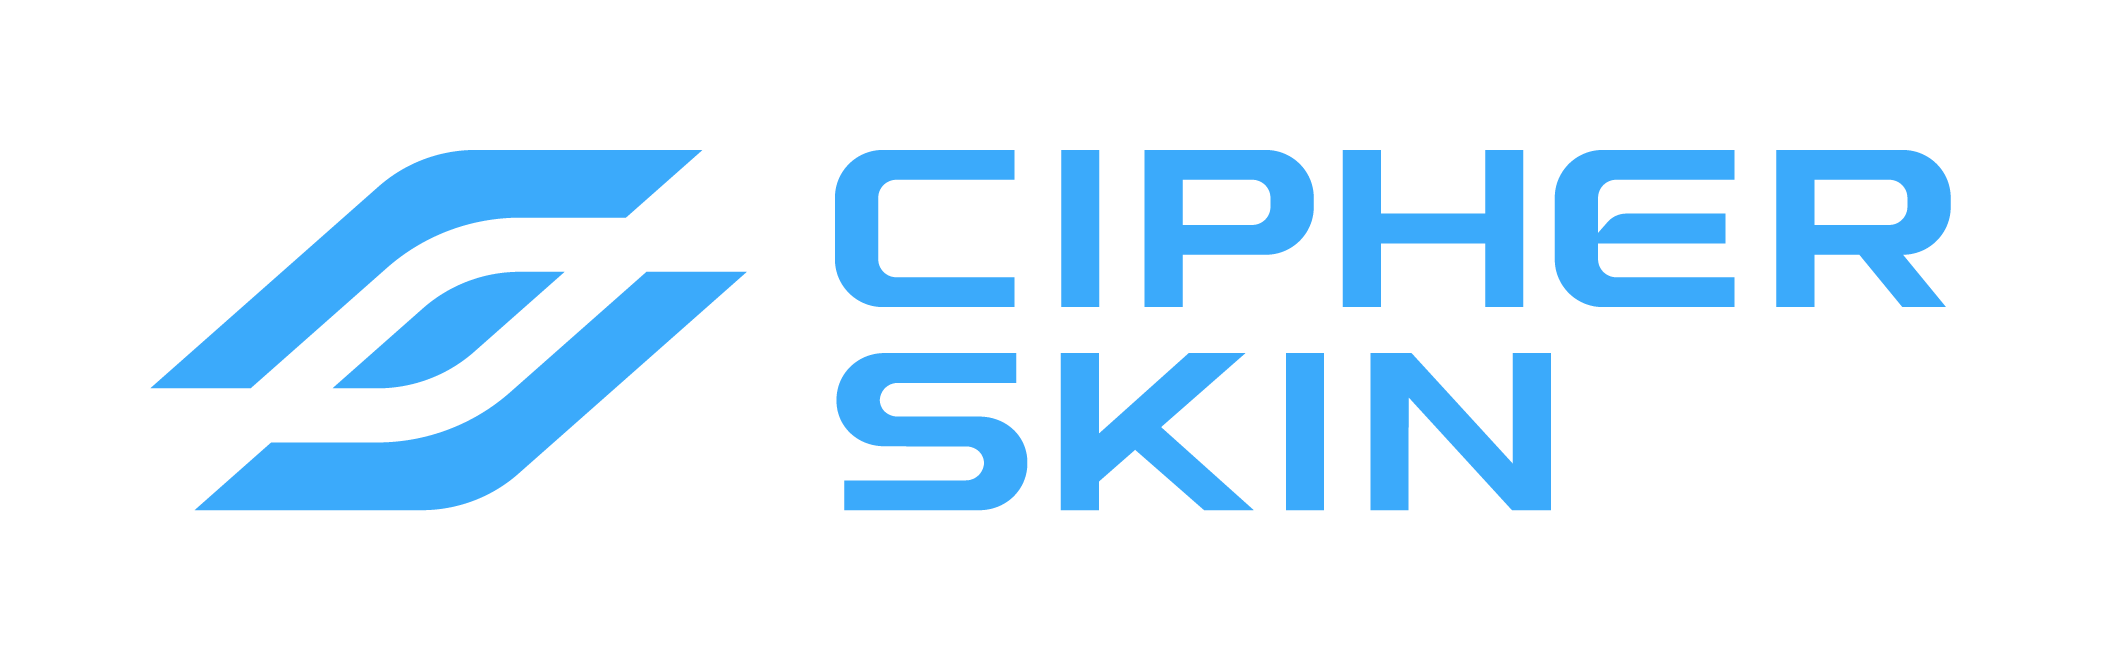 Cipher Skin logo